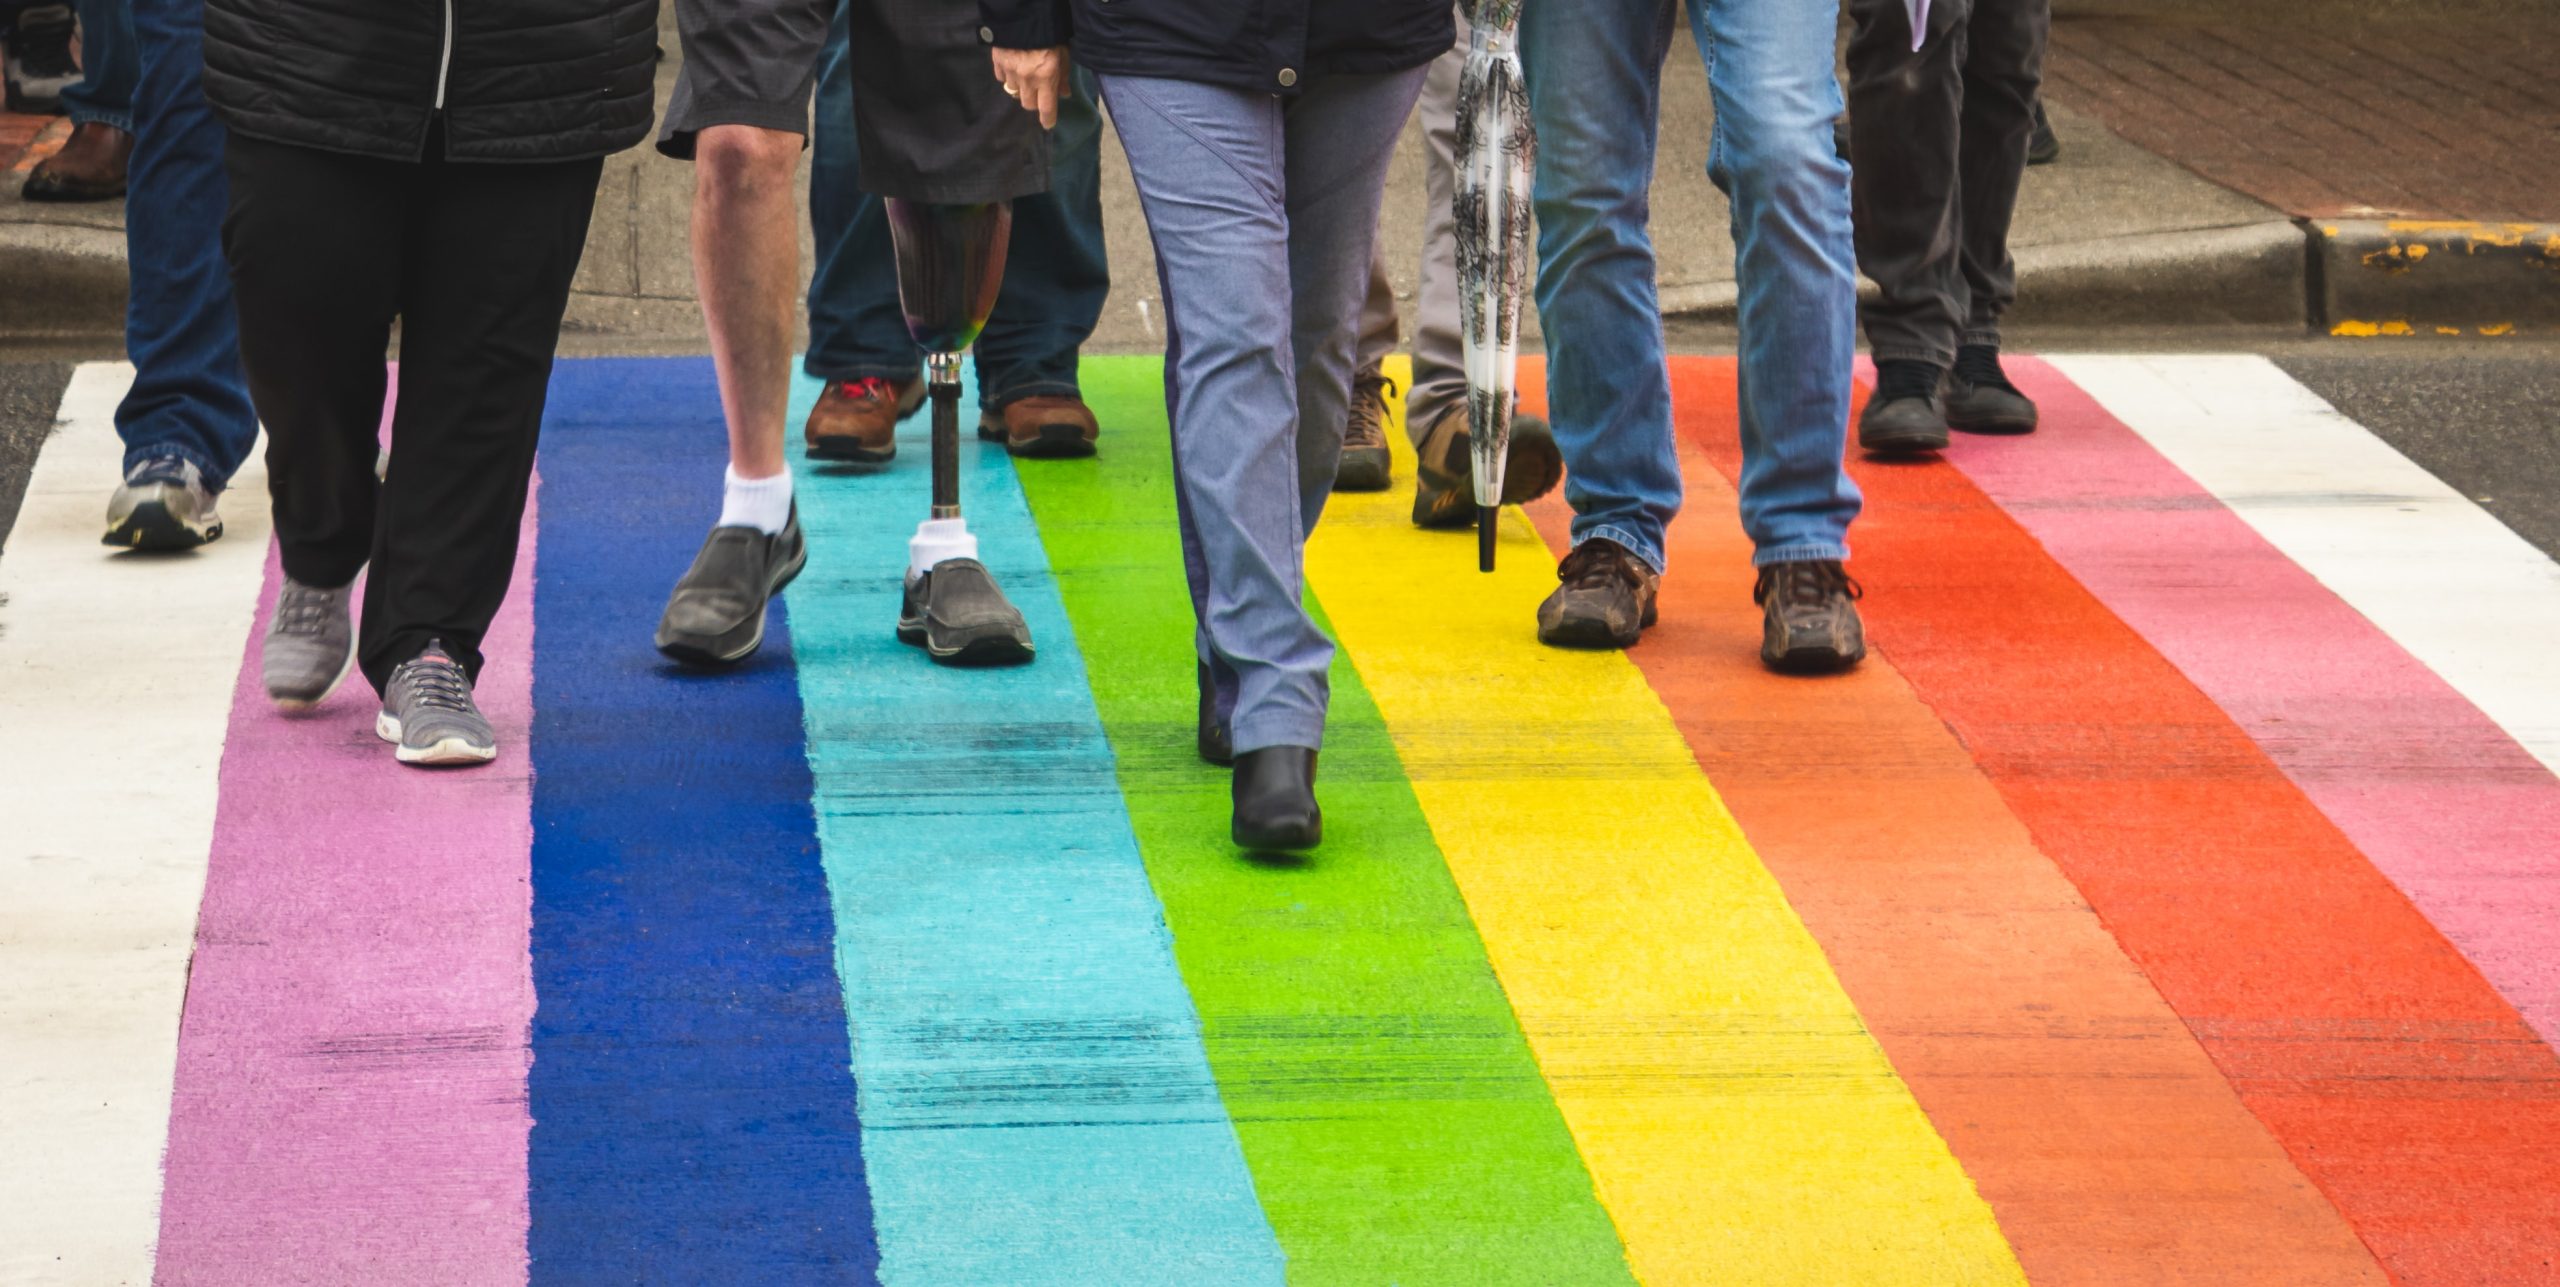 Olika människor går på övergångsställe målat i regnbågsfärger. Bara nederdelen av kropparna syns. En person går med kryckor, en annan person har en benprotes.